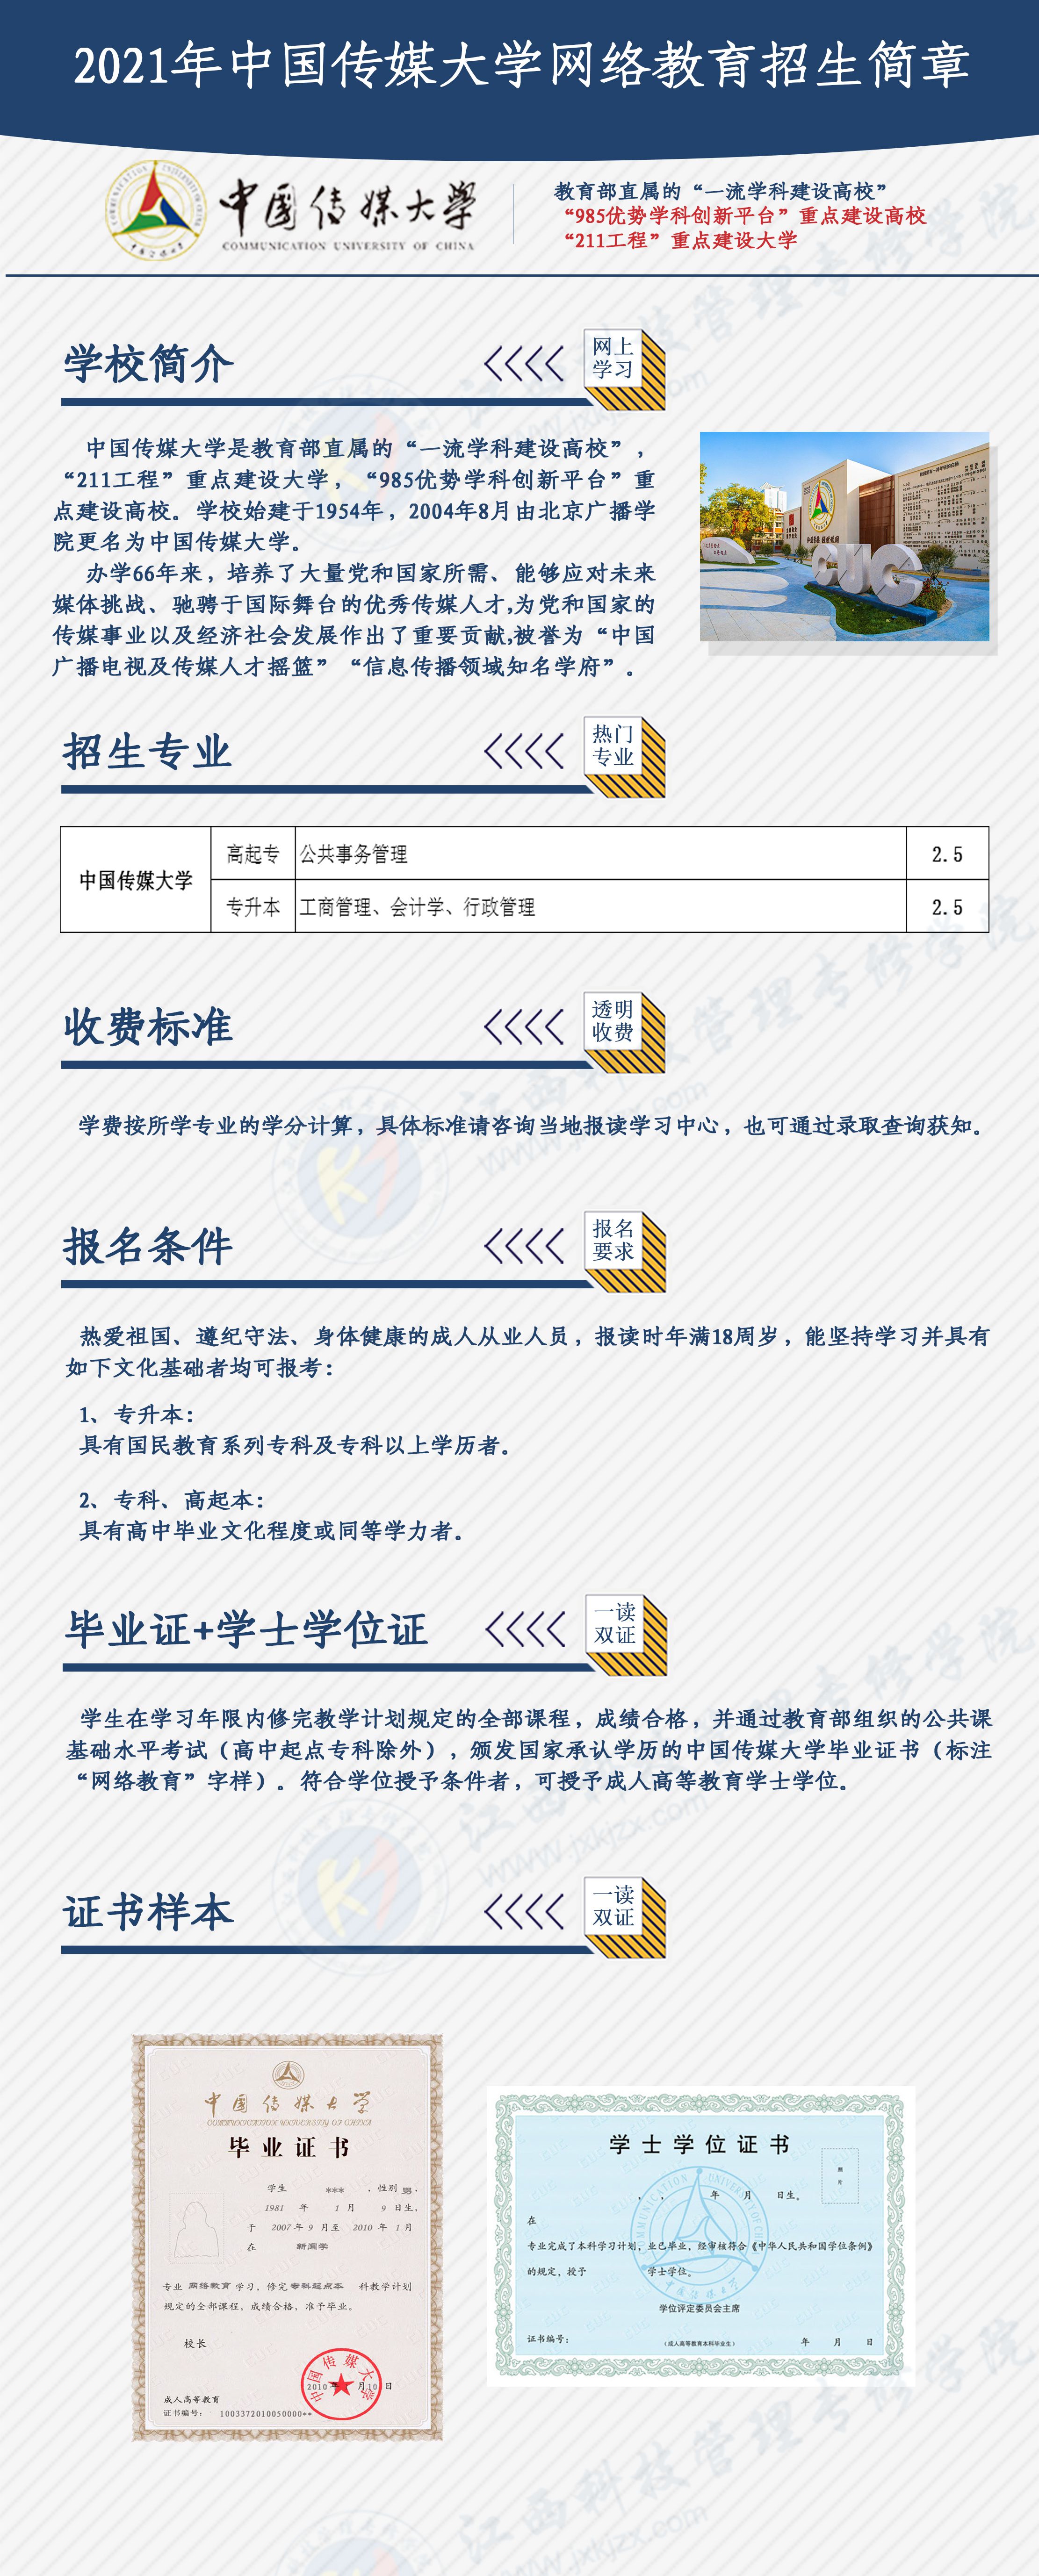 中国传媒大学2021年网络教育招生简章